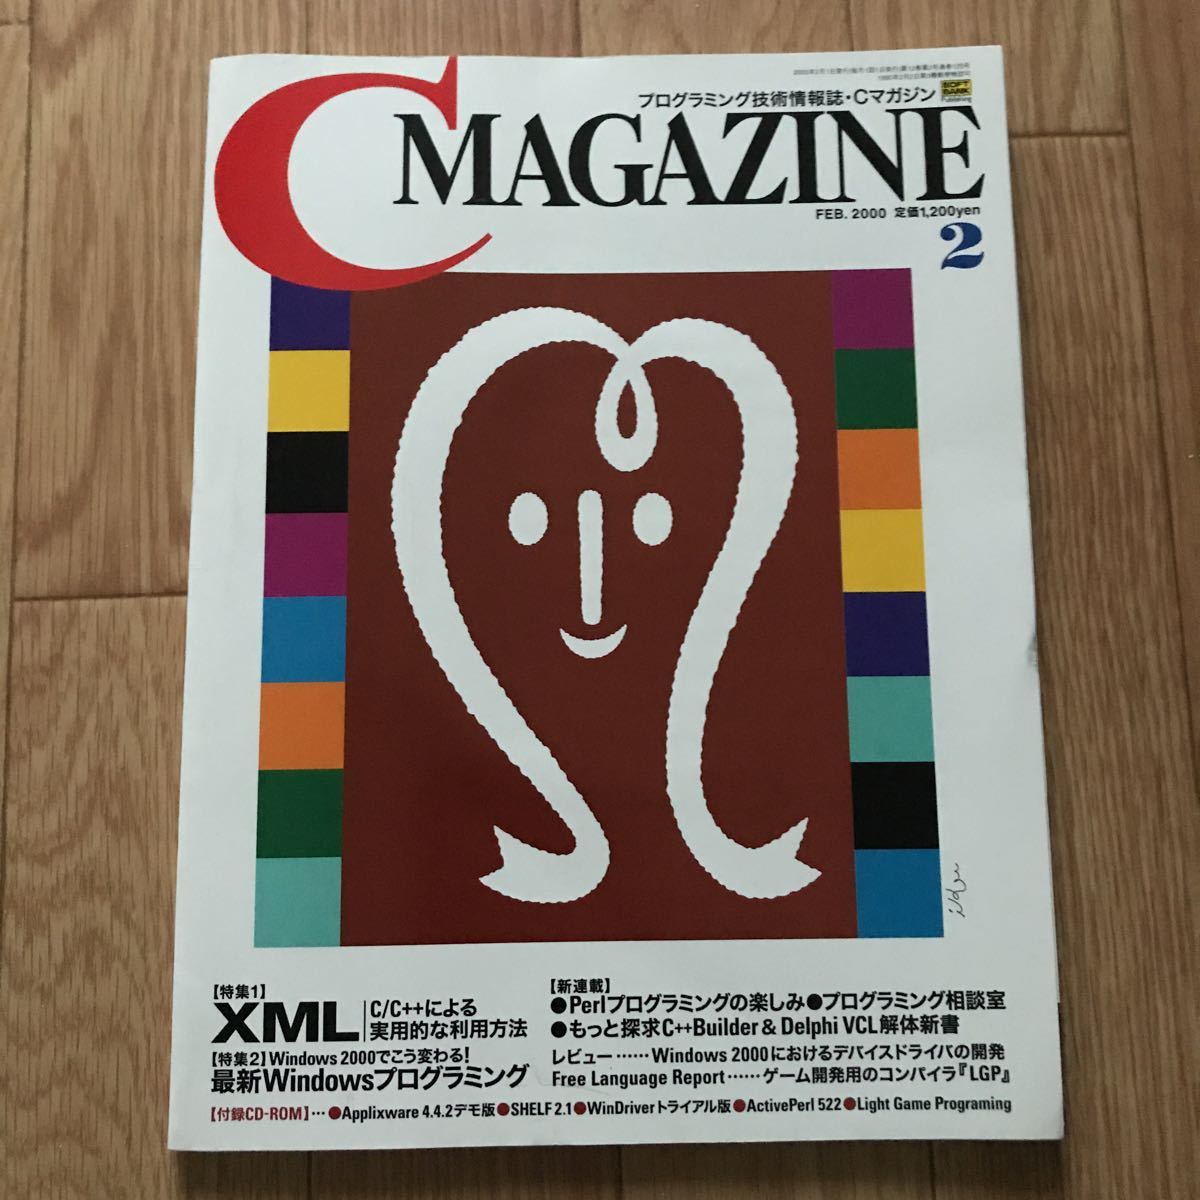 C MAGAZINE 2000 год 2 месяц номер Vol. 12 No.2